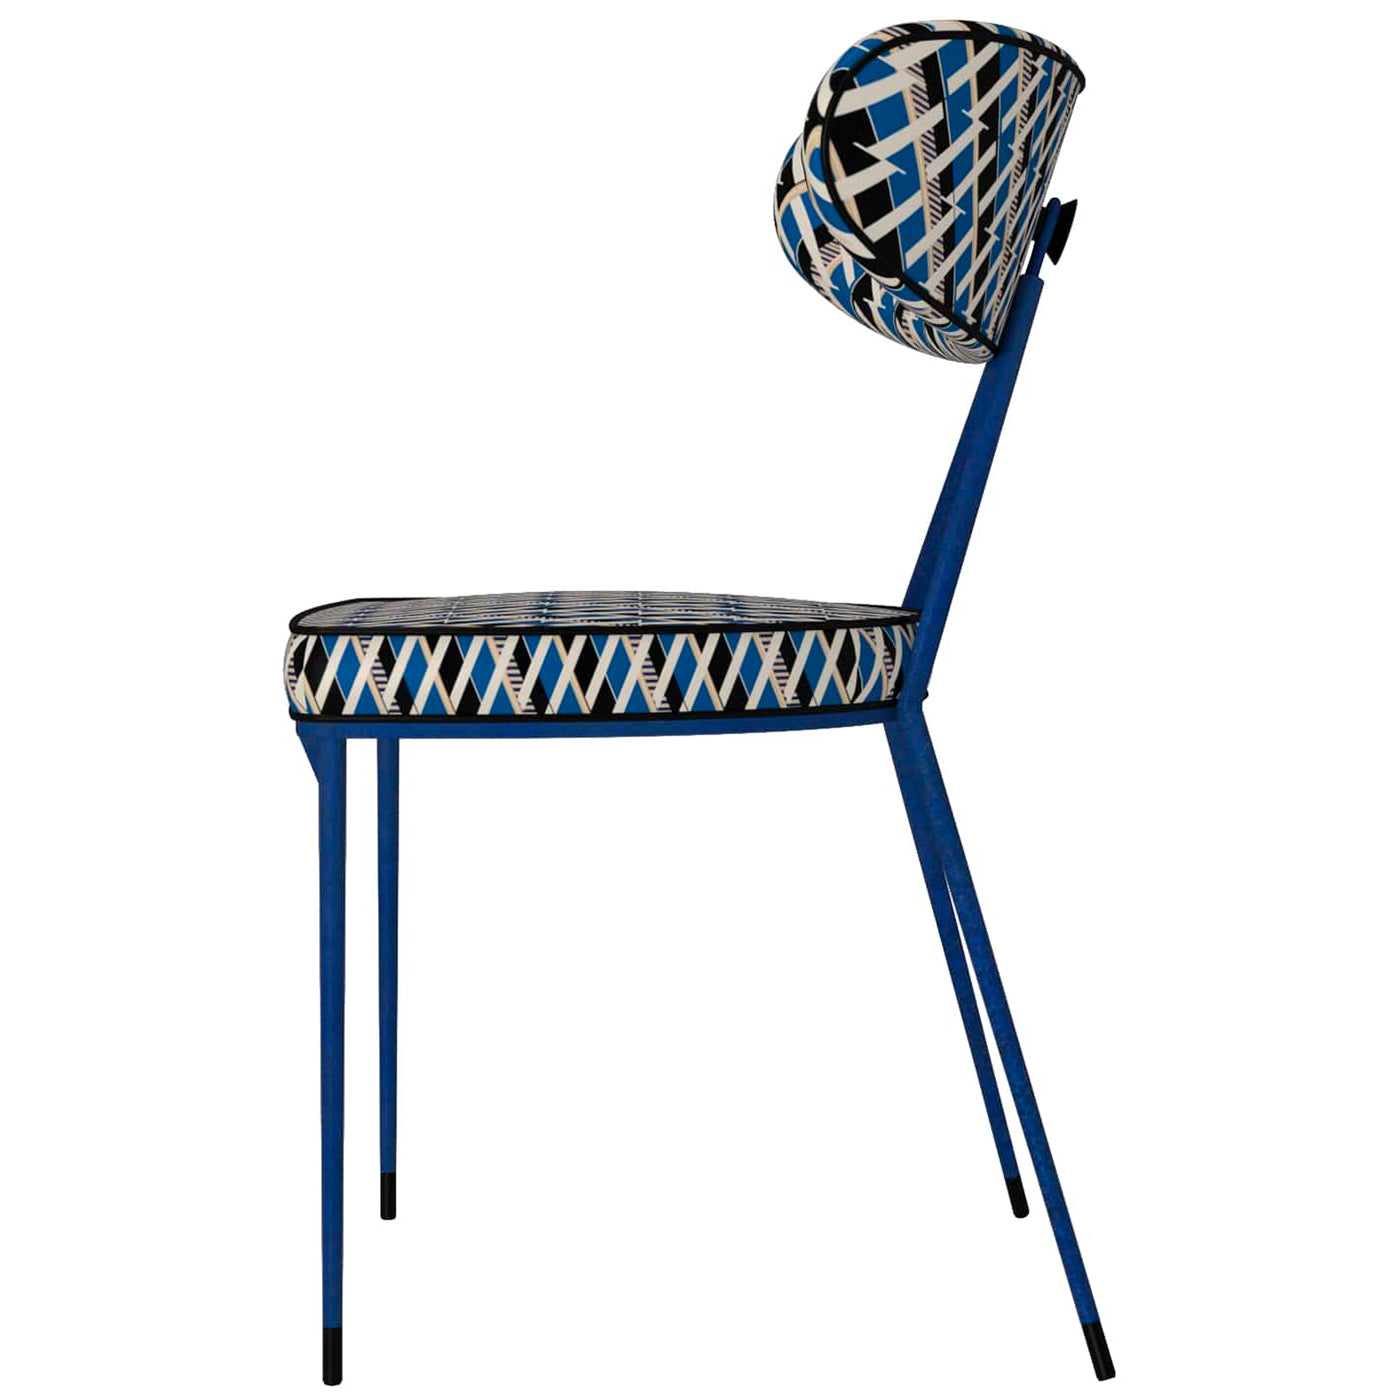 Kleins Blue Chair Objet - Alternative view 1